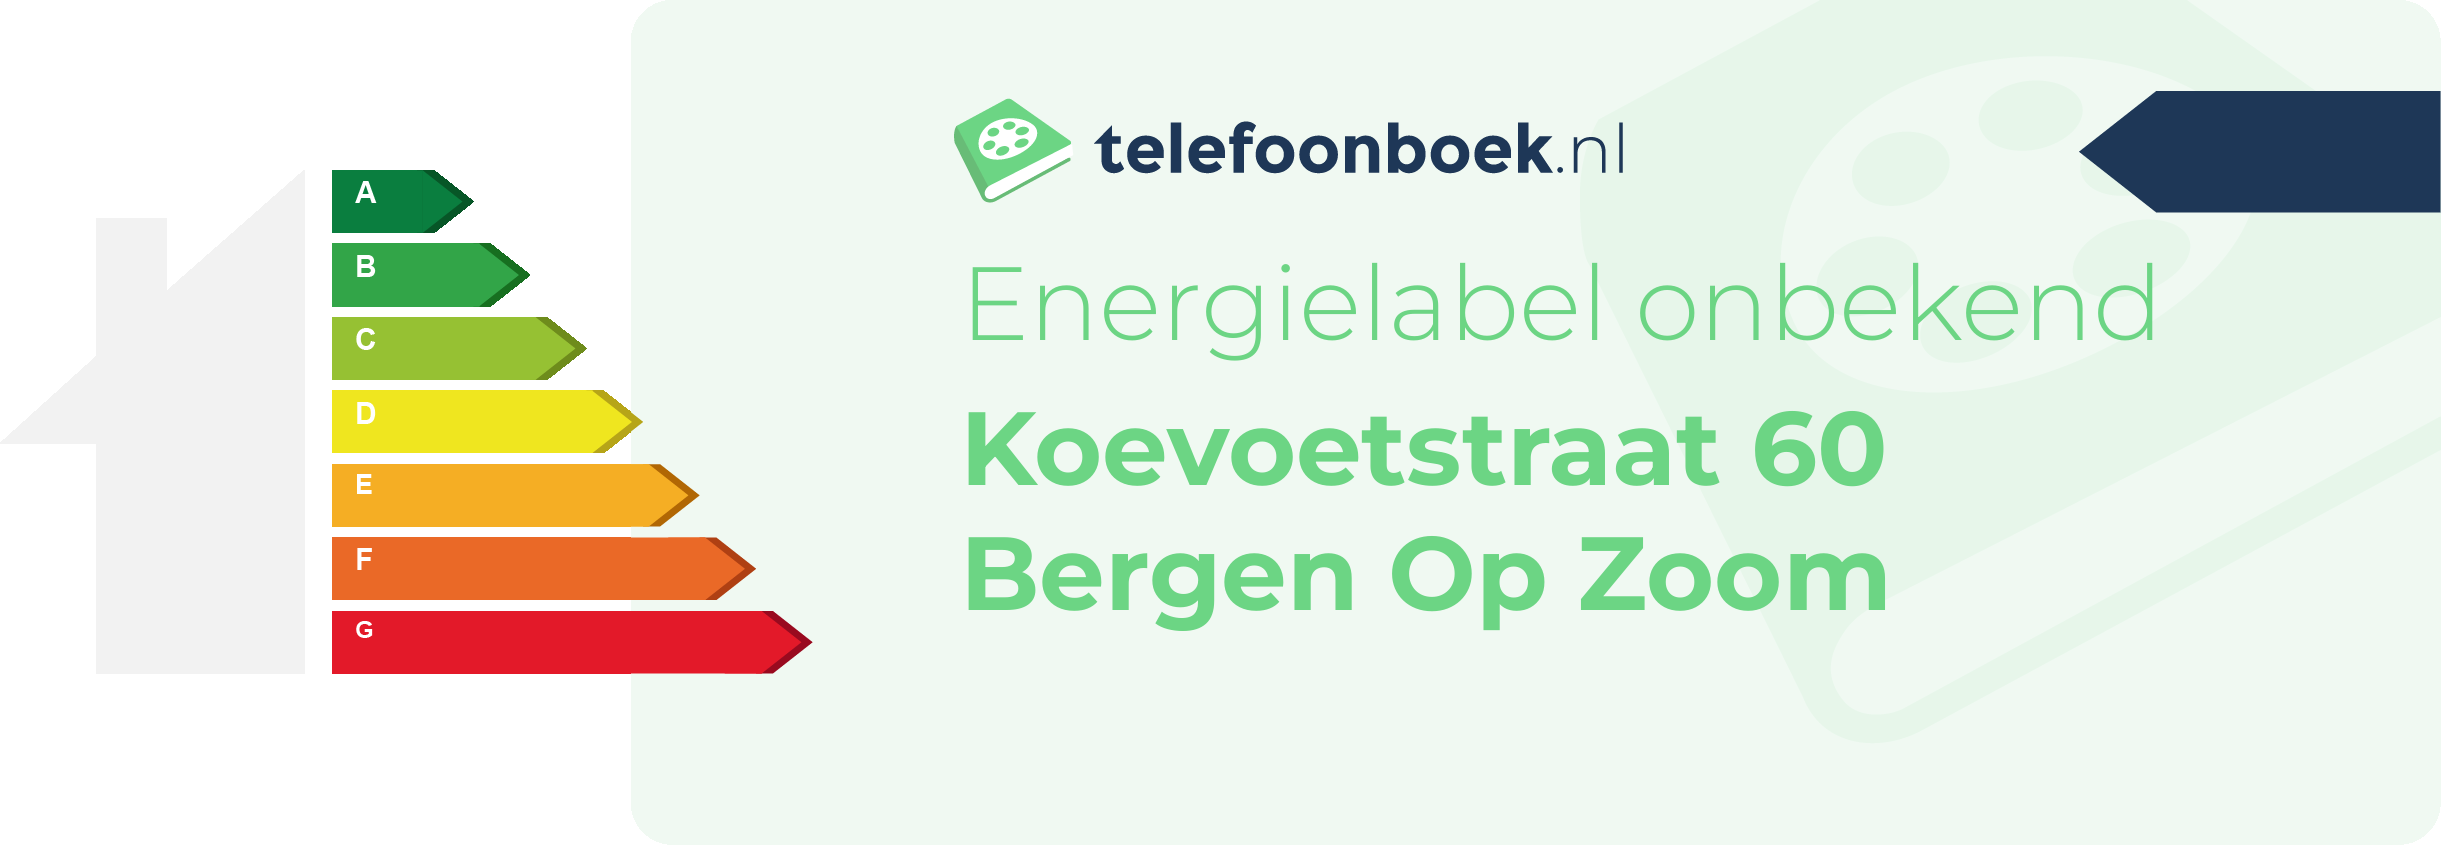 Energielabel Koevoetstraat 60 Bergen Op Zoom